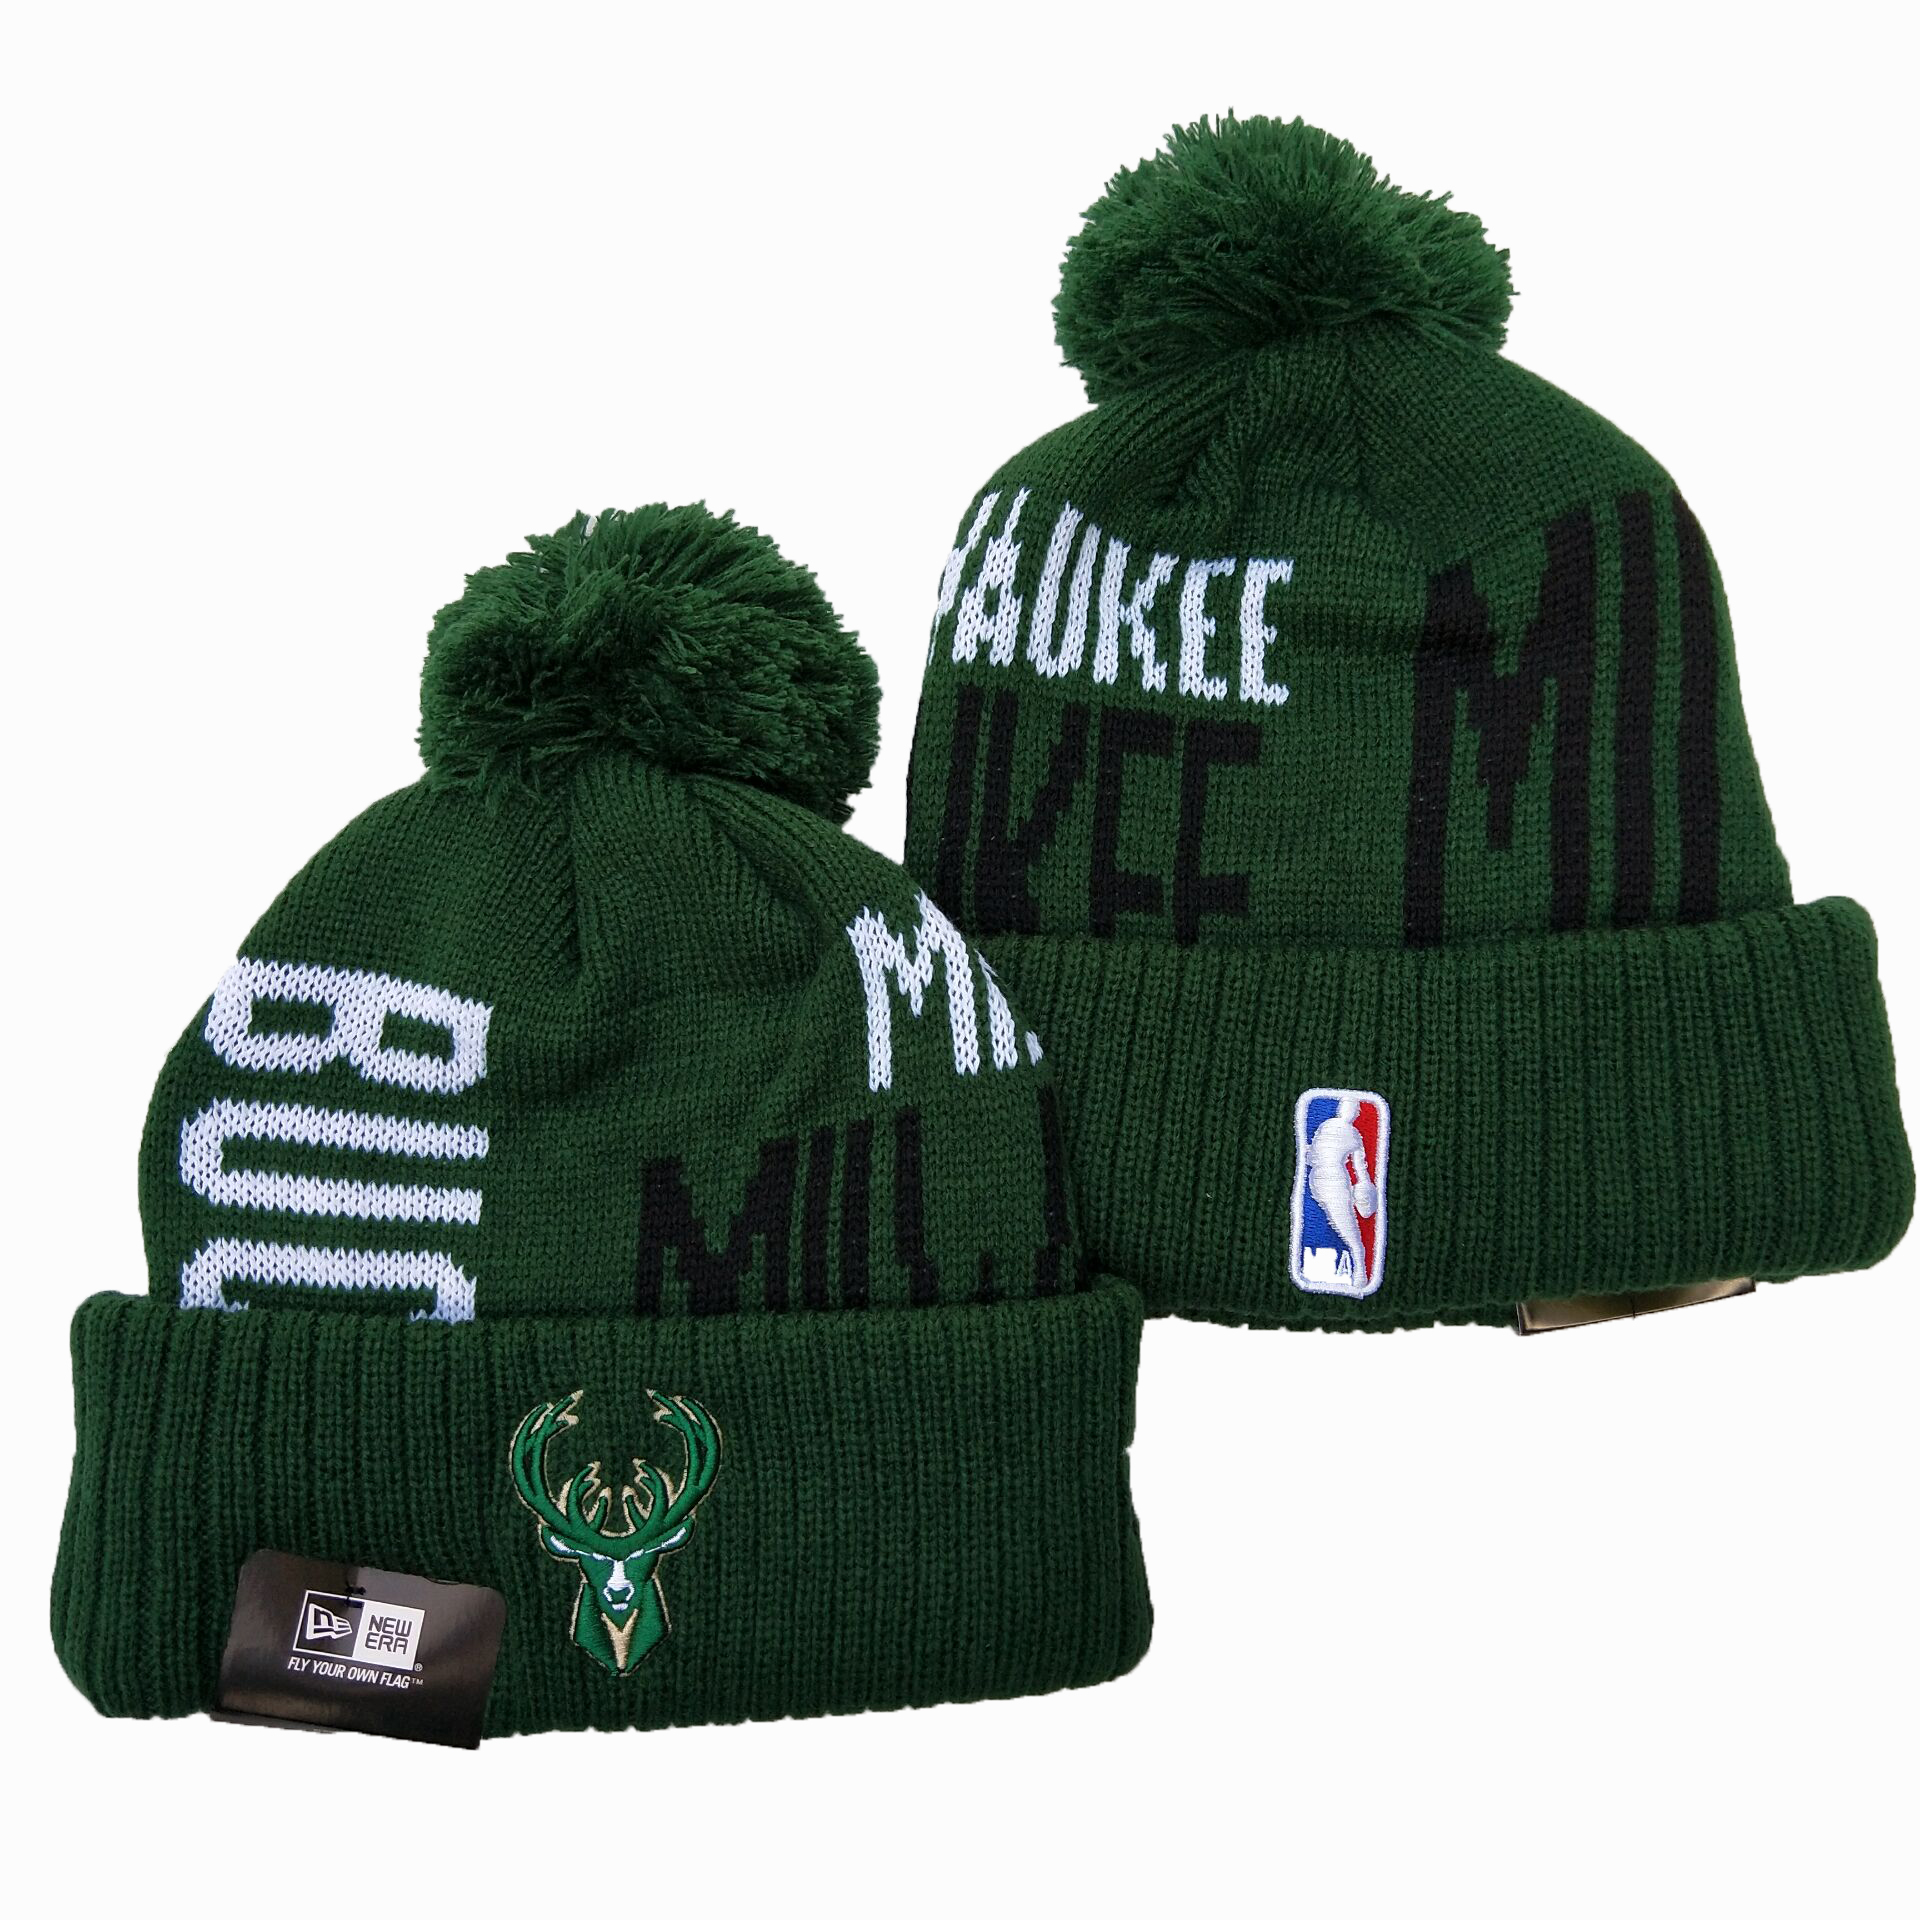 Bucks Team Logo Green Wordmark Cuffed Pom Knit Hat YD